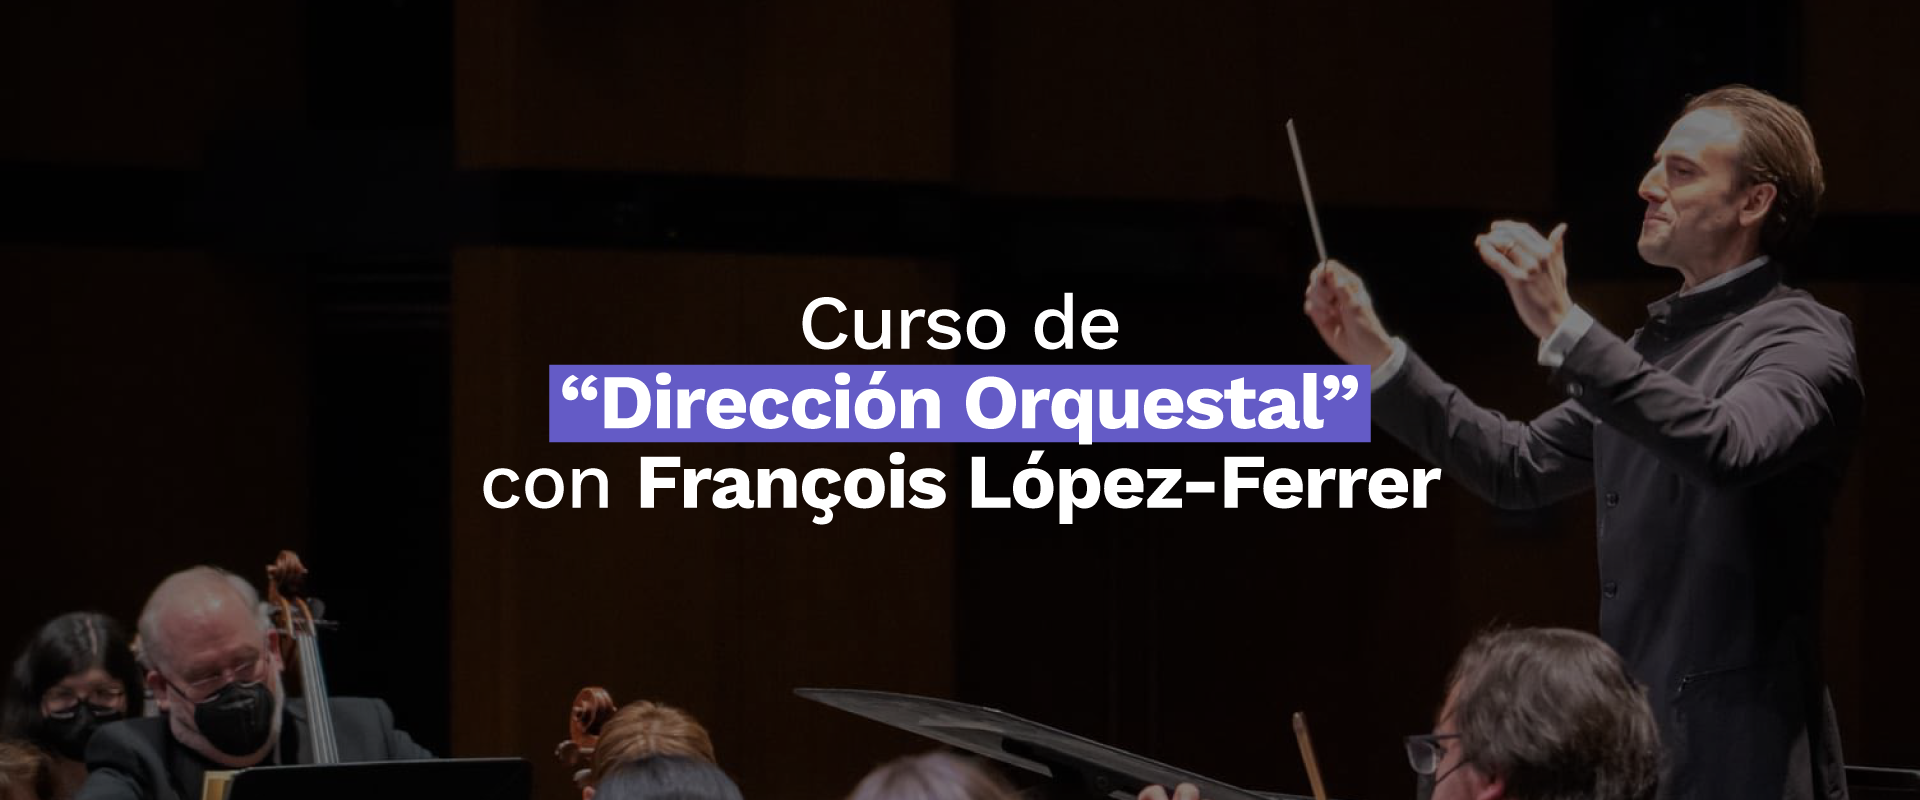 Curso de Dirección Orquestal con François López-Ferrer